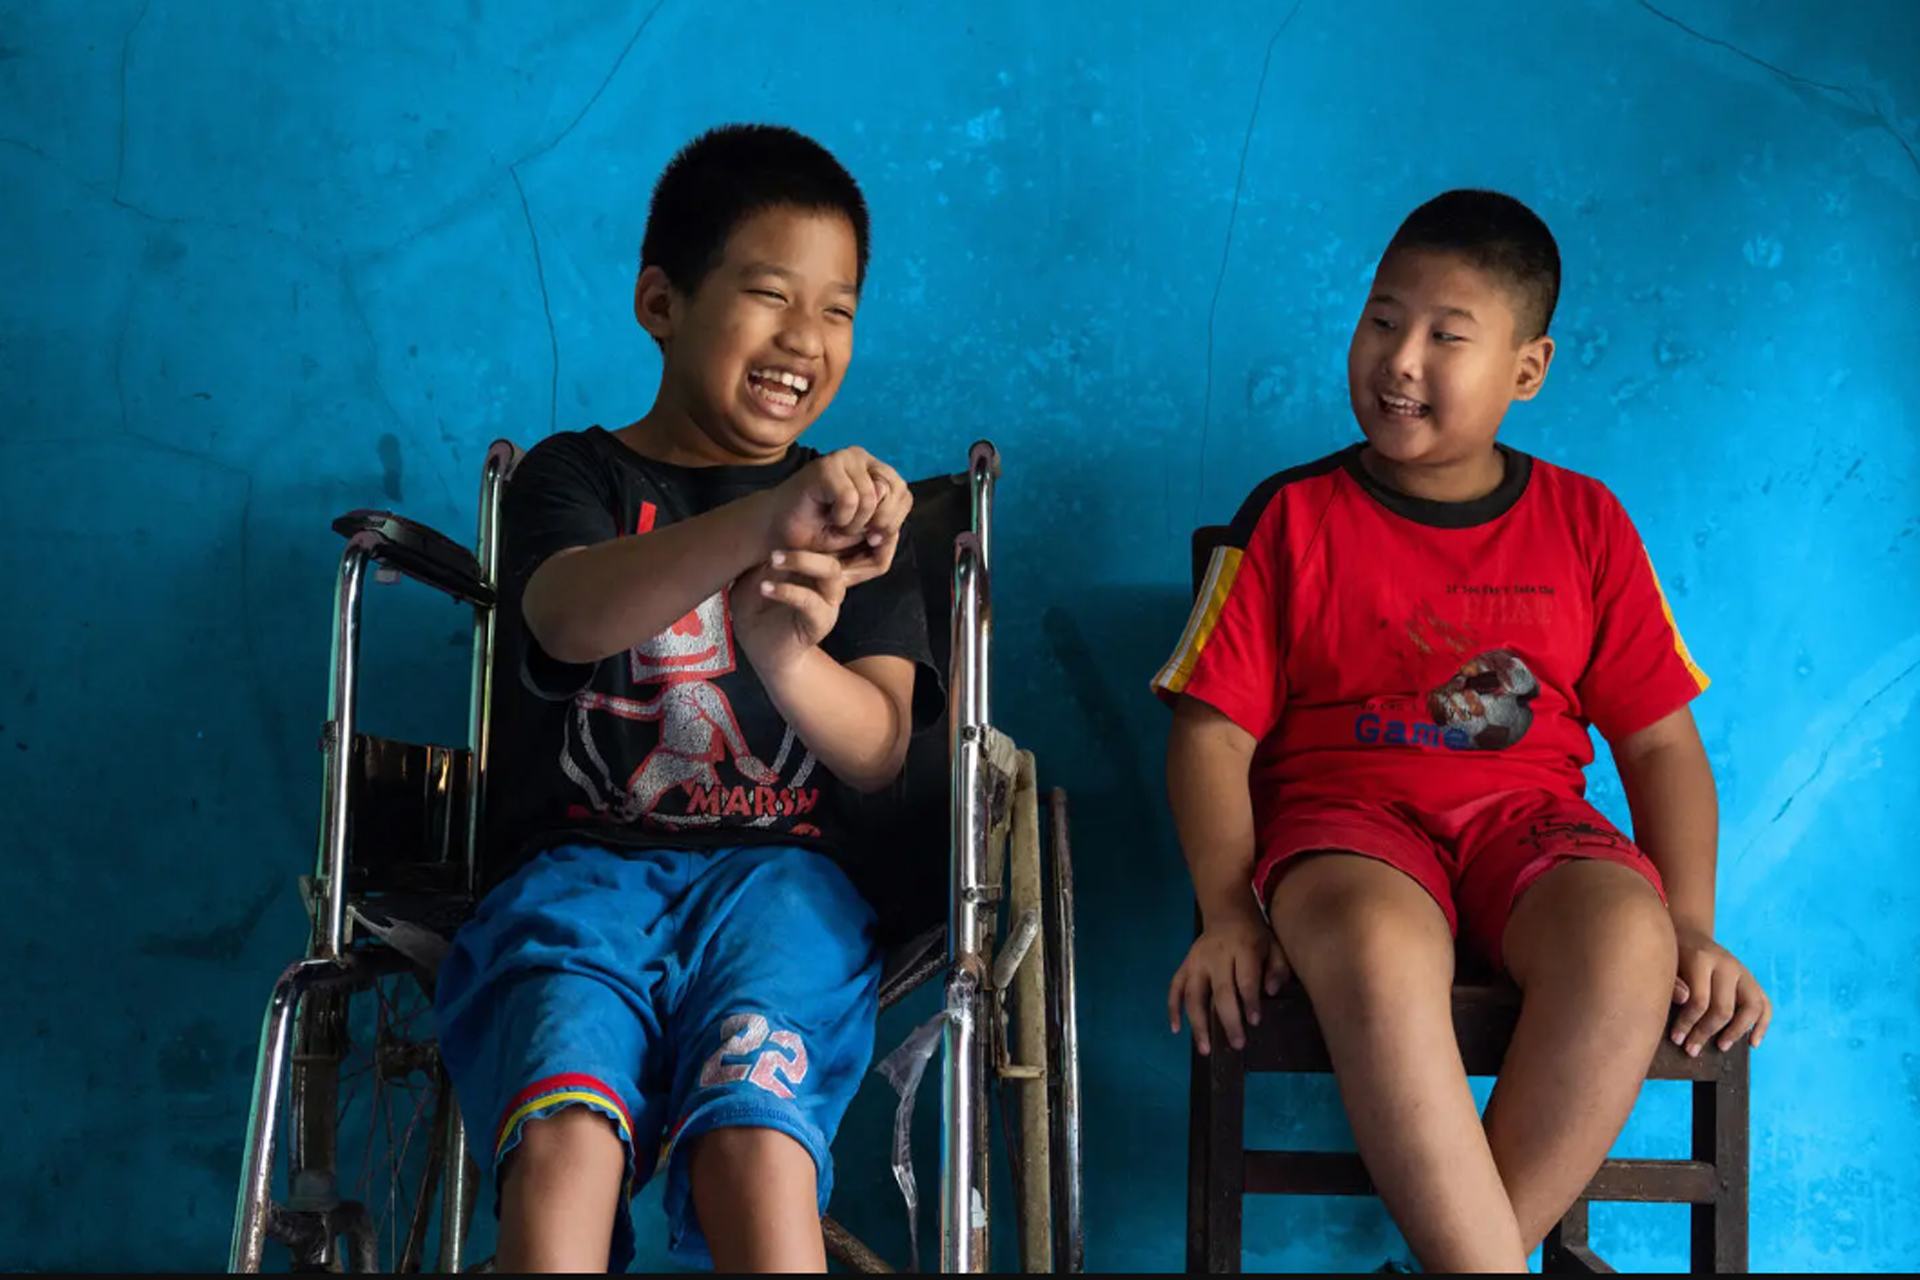 سيفول (على اليسار)، 12 عاما، يعاني من إعاقة جسدية،  وهو يجلس بجوار أفضل صديق له كيفن سابوترا (على اليمين)، 9 أعوام، الذي يعاني من إعاقة بصرية، في منزل سيفول في بانيوماس، وسط جاوا، إندونيسيا.